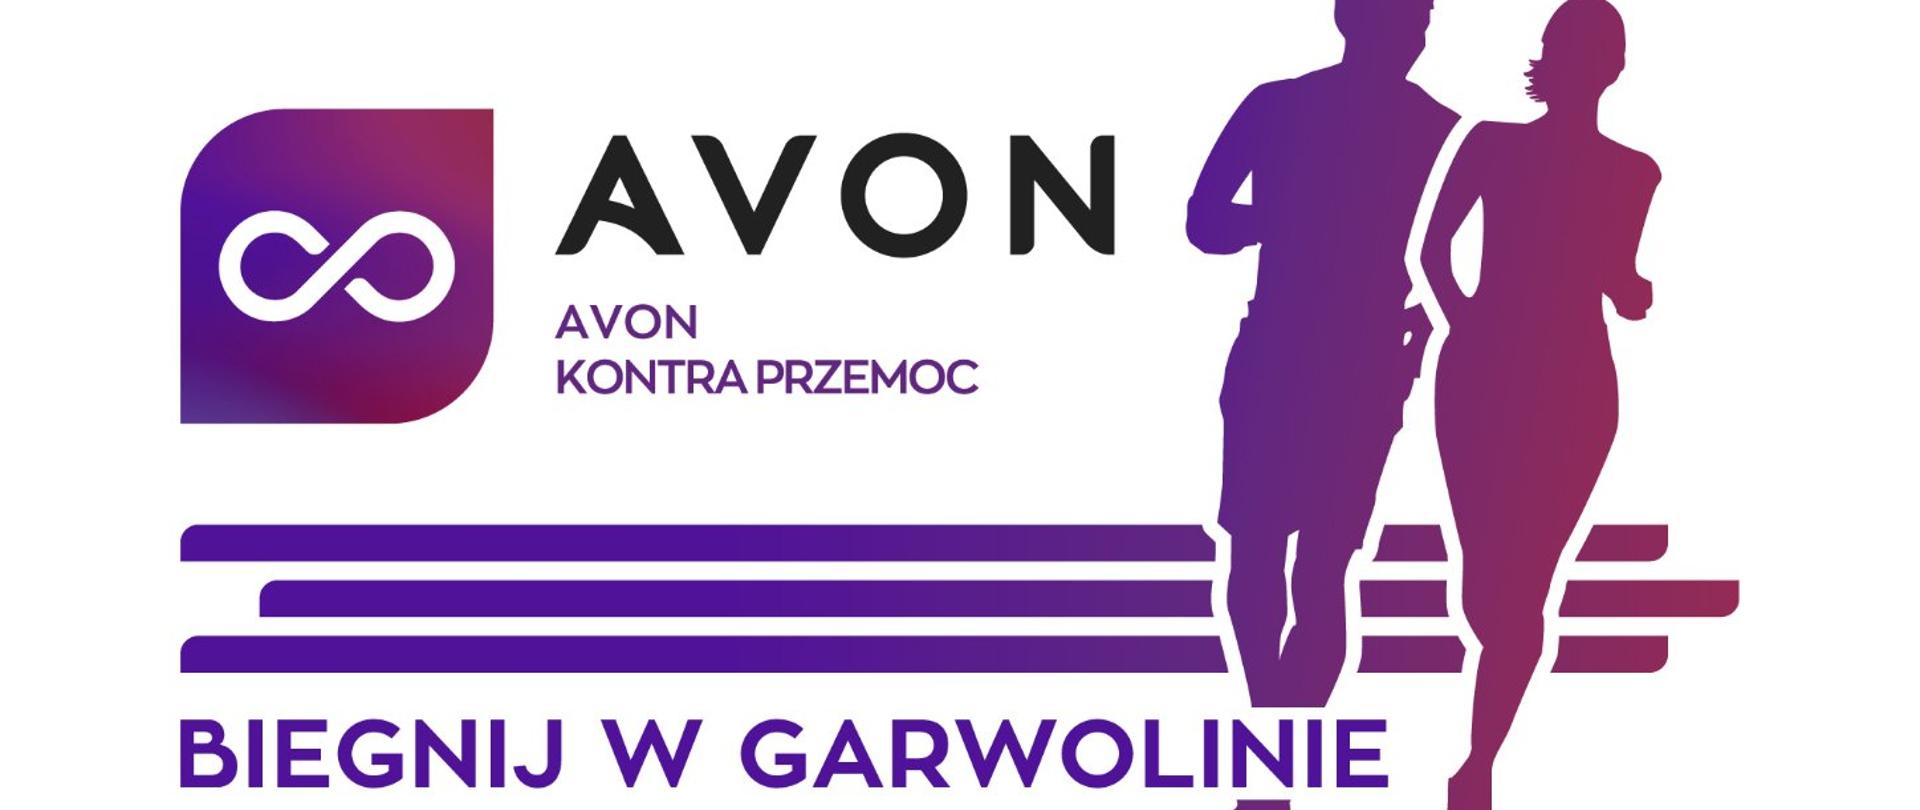 Avon kontra przemoc - biegnij w Garwolinie - plakat informacyjny